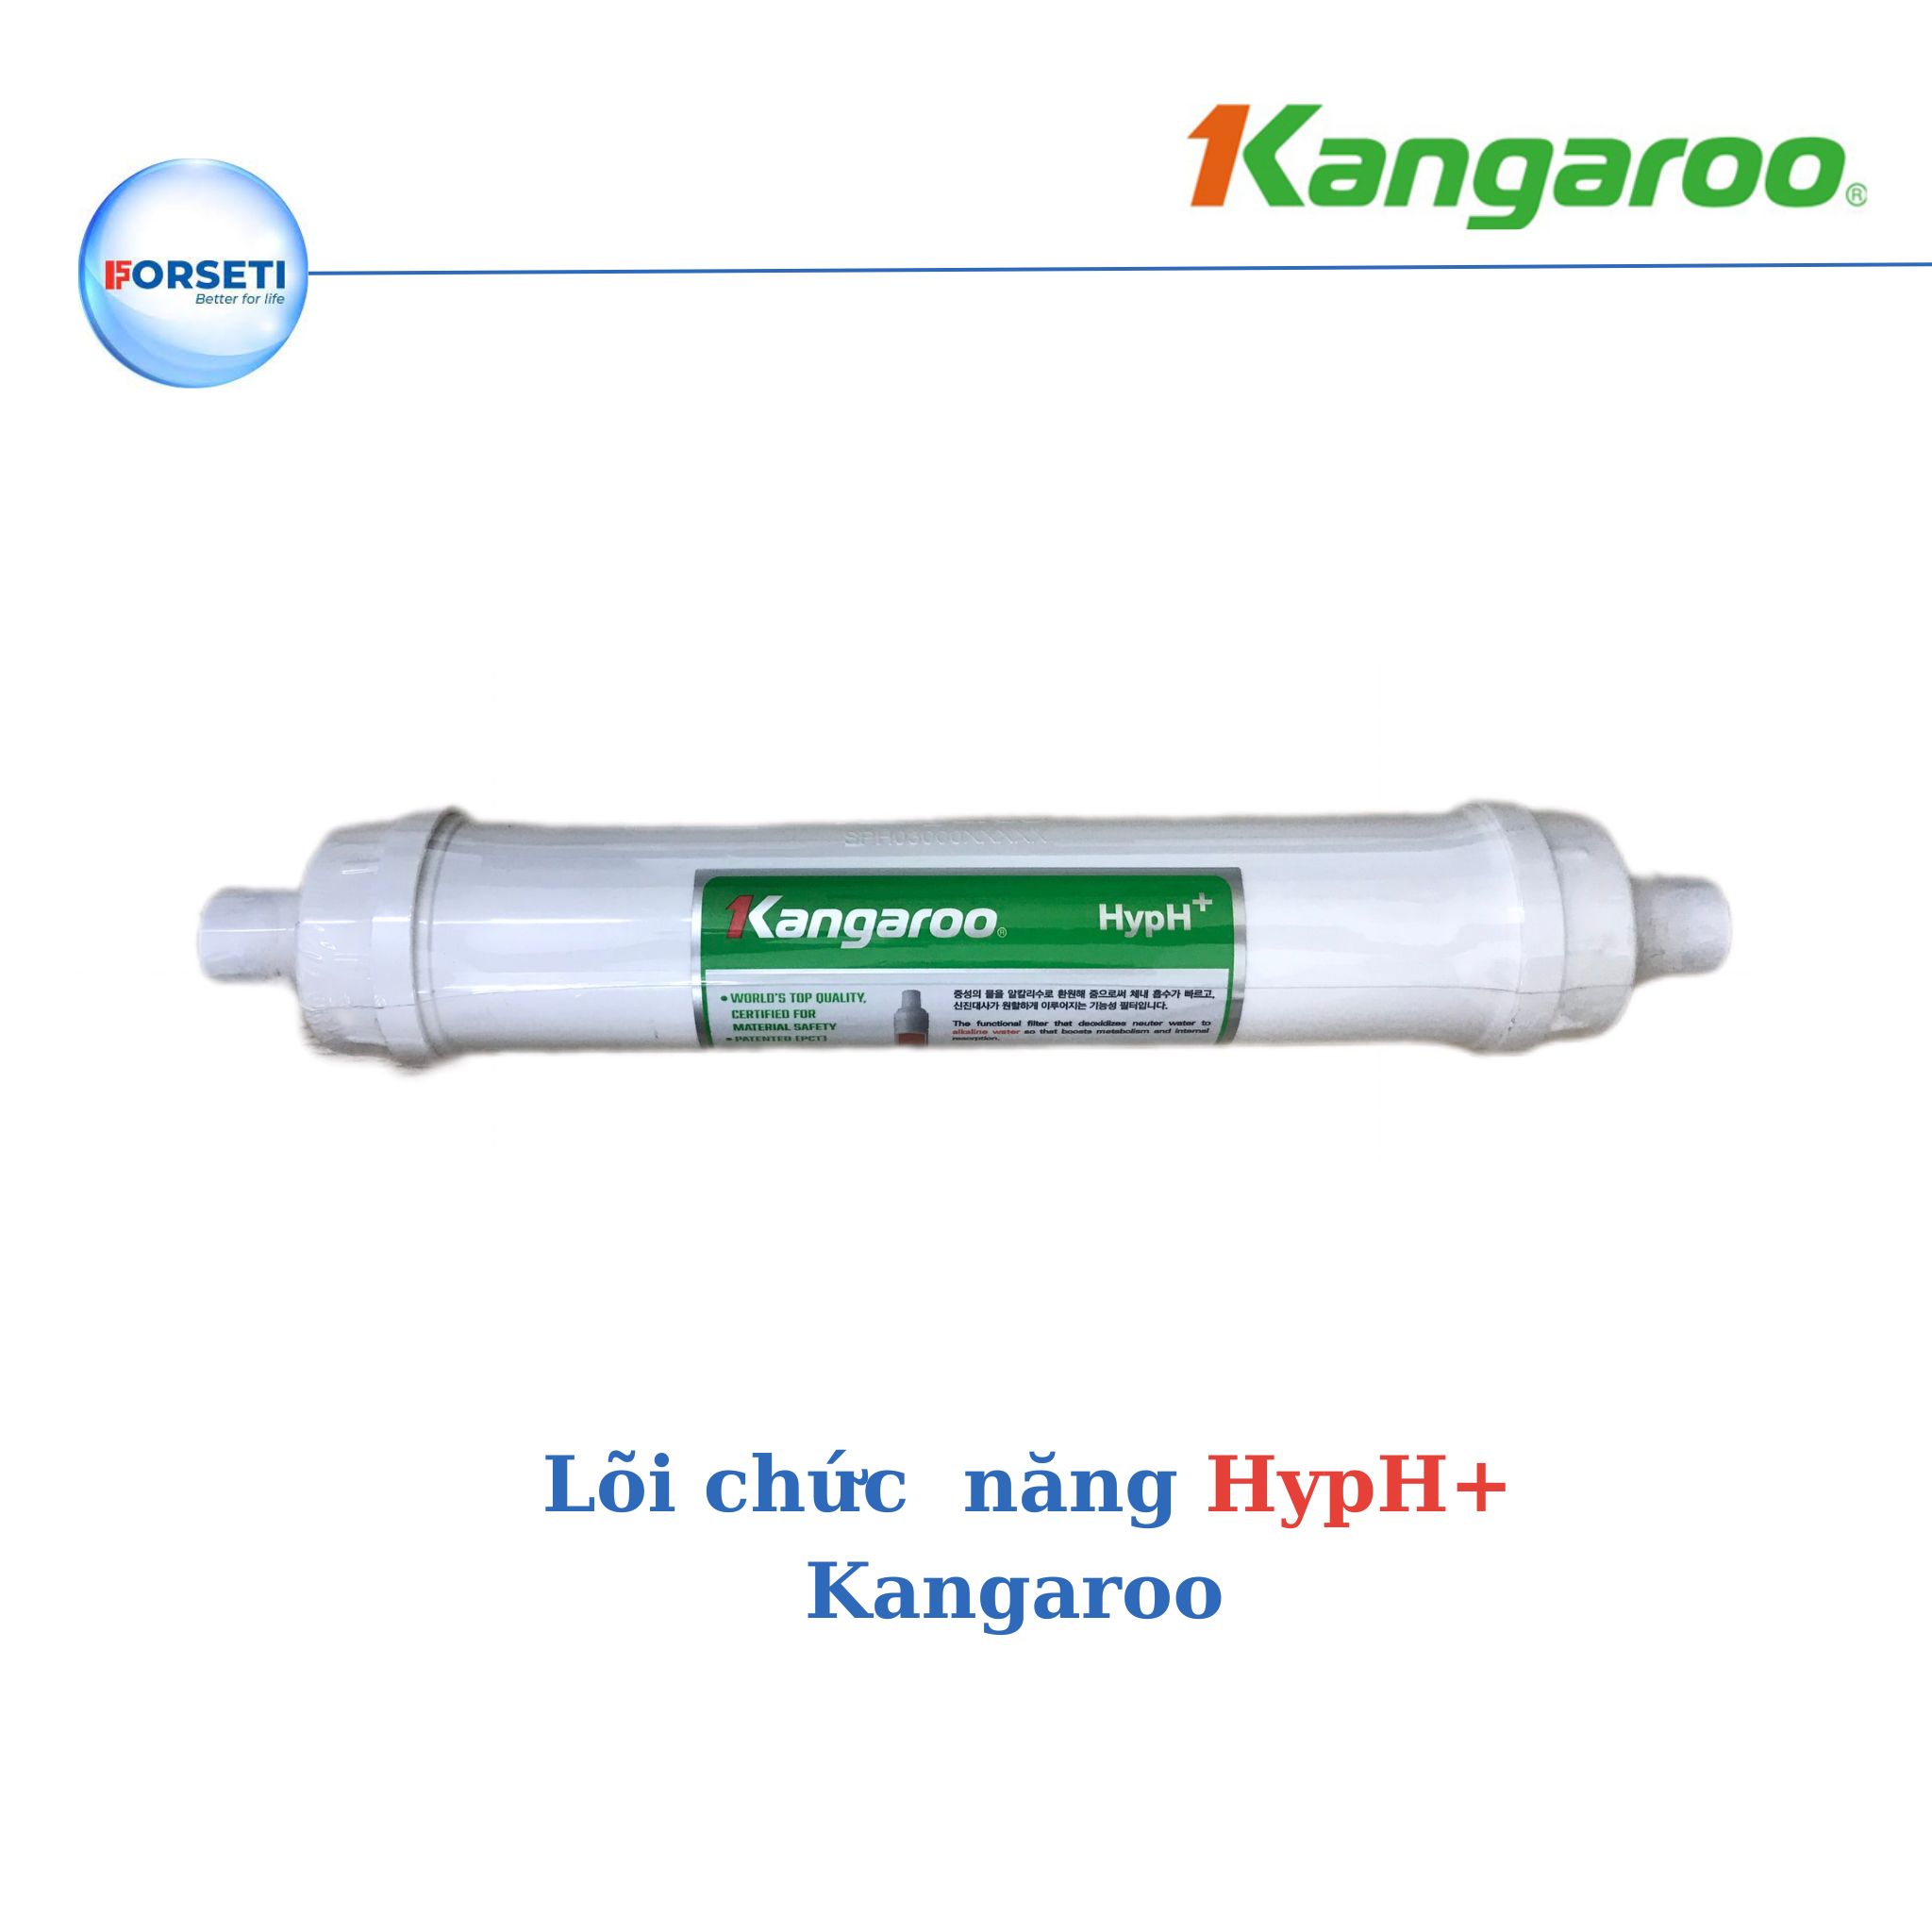 Lõi lọc Kangaroo lõi lọc số 7 - HypH+ dùng cho máy lọc nước Kangaroo Hydrogen - Hàng chính hãng